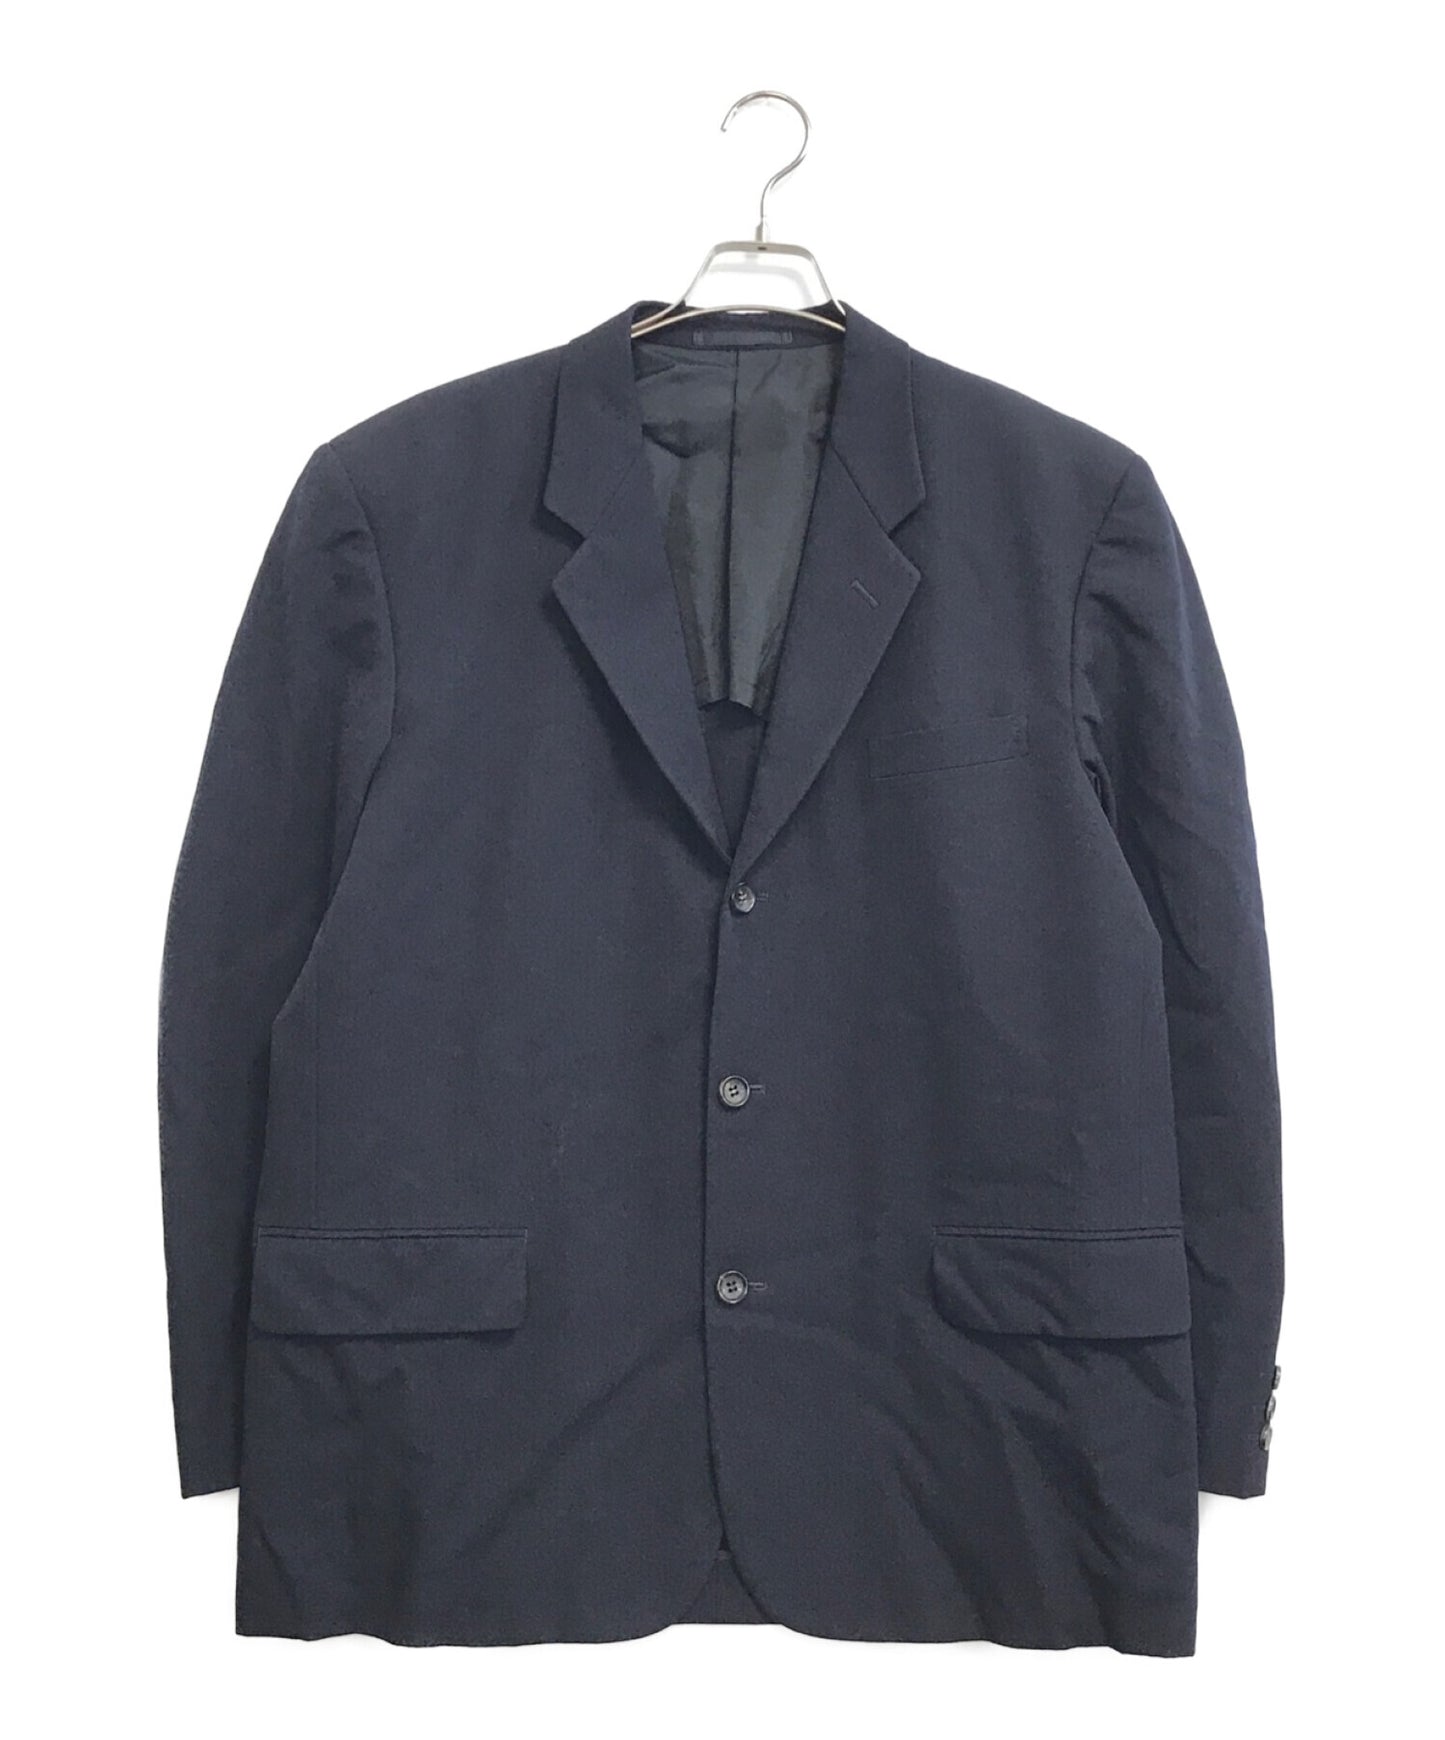 Comme des Garcons Homme [Old] 90 's Wool Gabardine 3B Jacket HJ-10019M